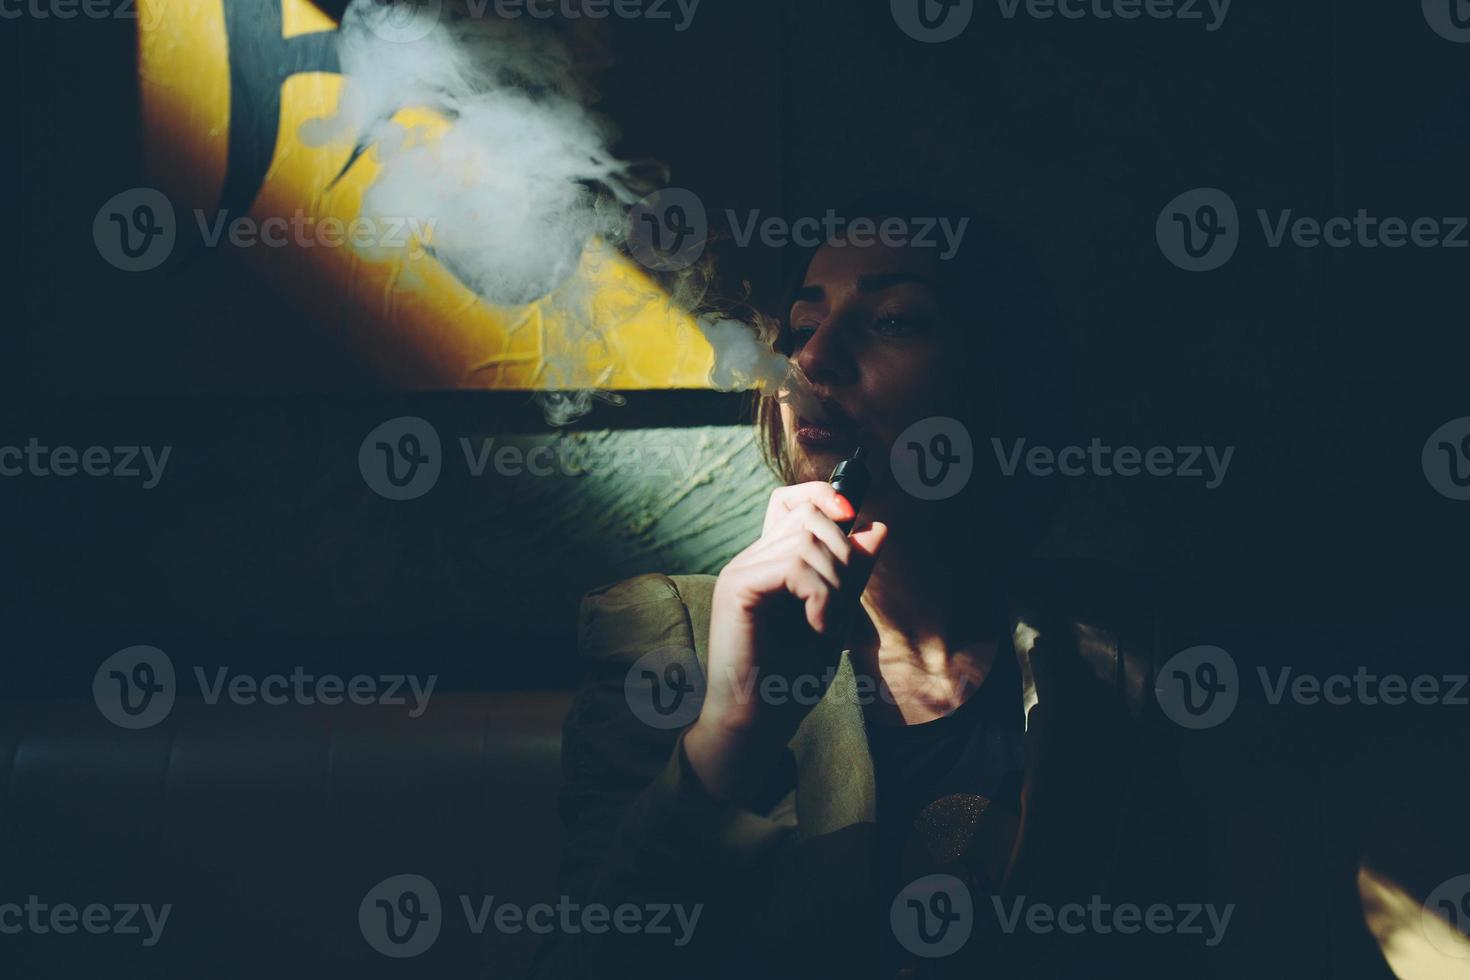 chica se sienta y fuma cigarrillo electrónico foto